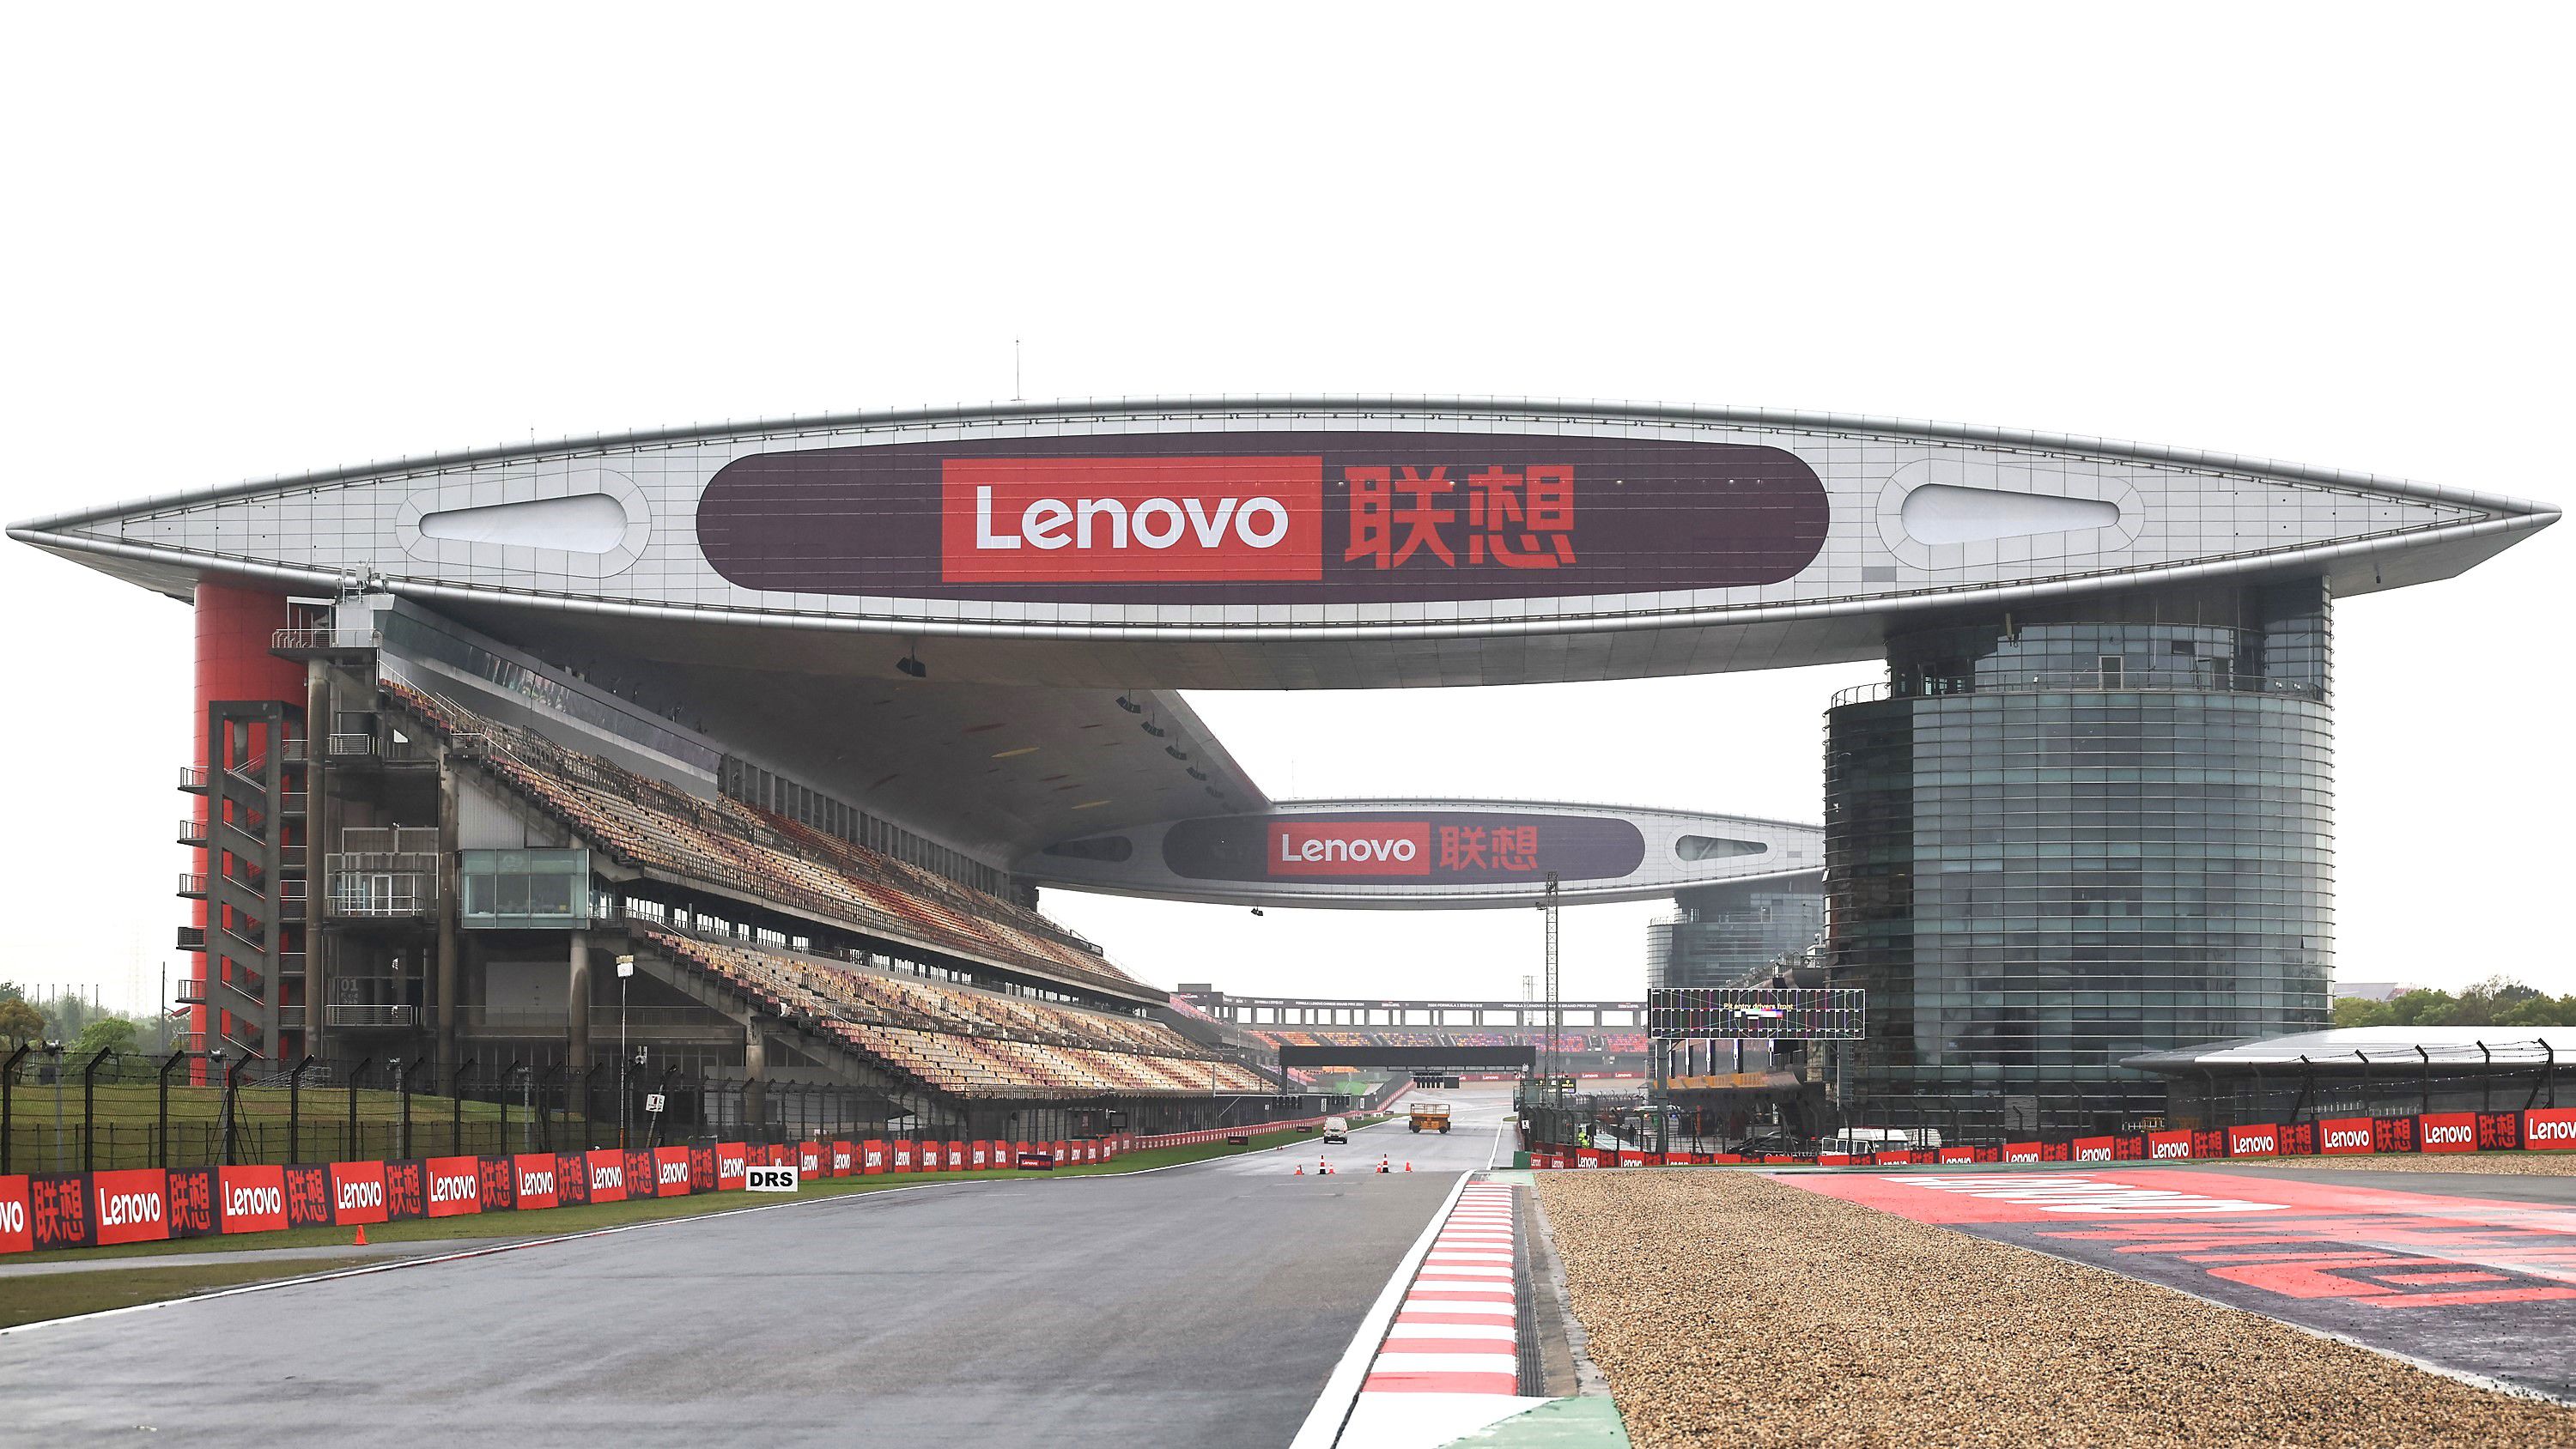 Már rég láttuk a sanghaji versenypálya karakteres központi építményét